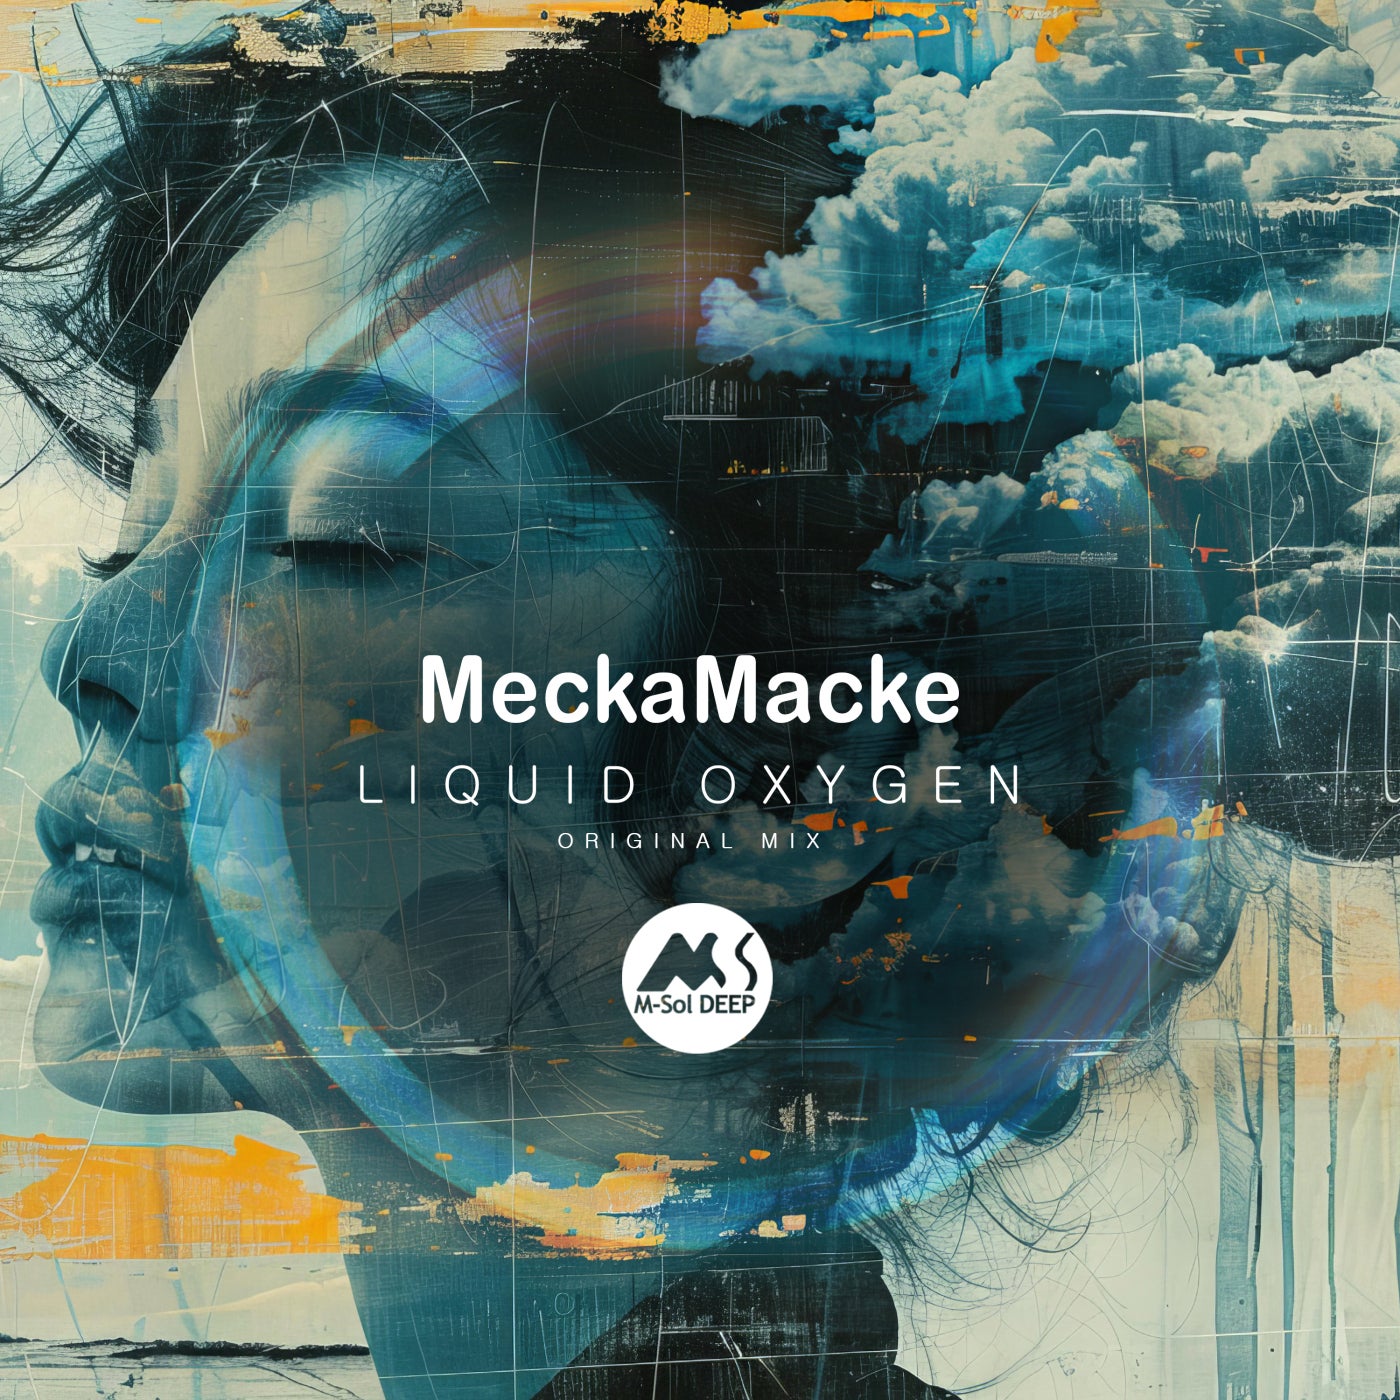 Cover - M-Sol DEEP, MeckaMacke - Liquid Oxygen (Original Mix)